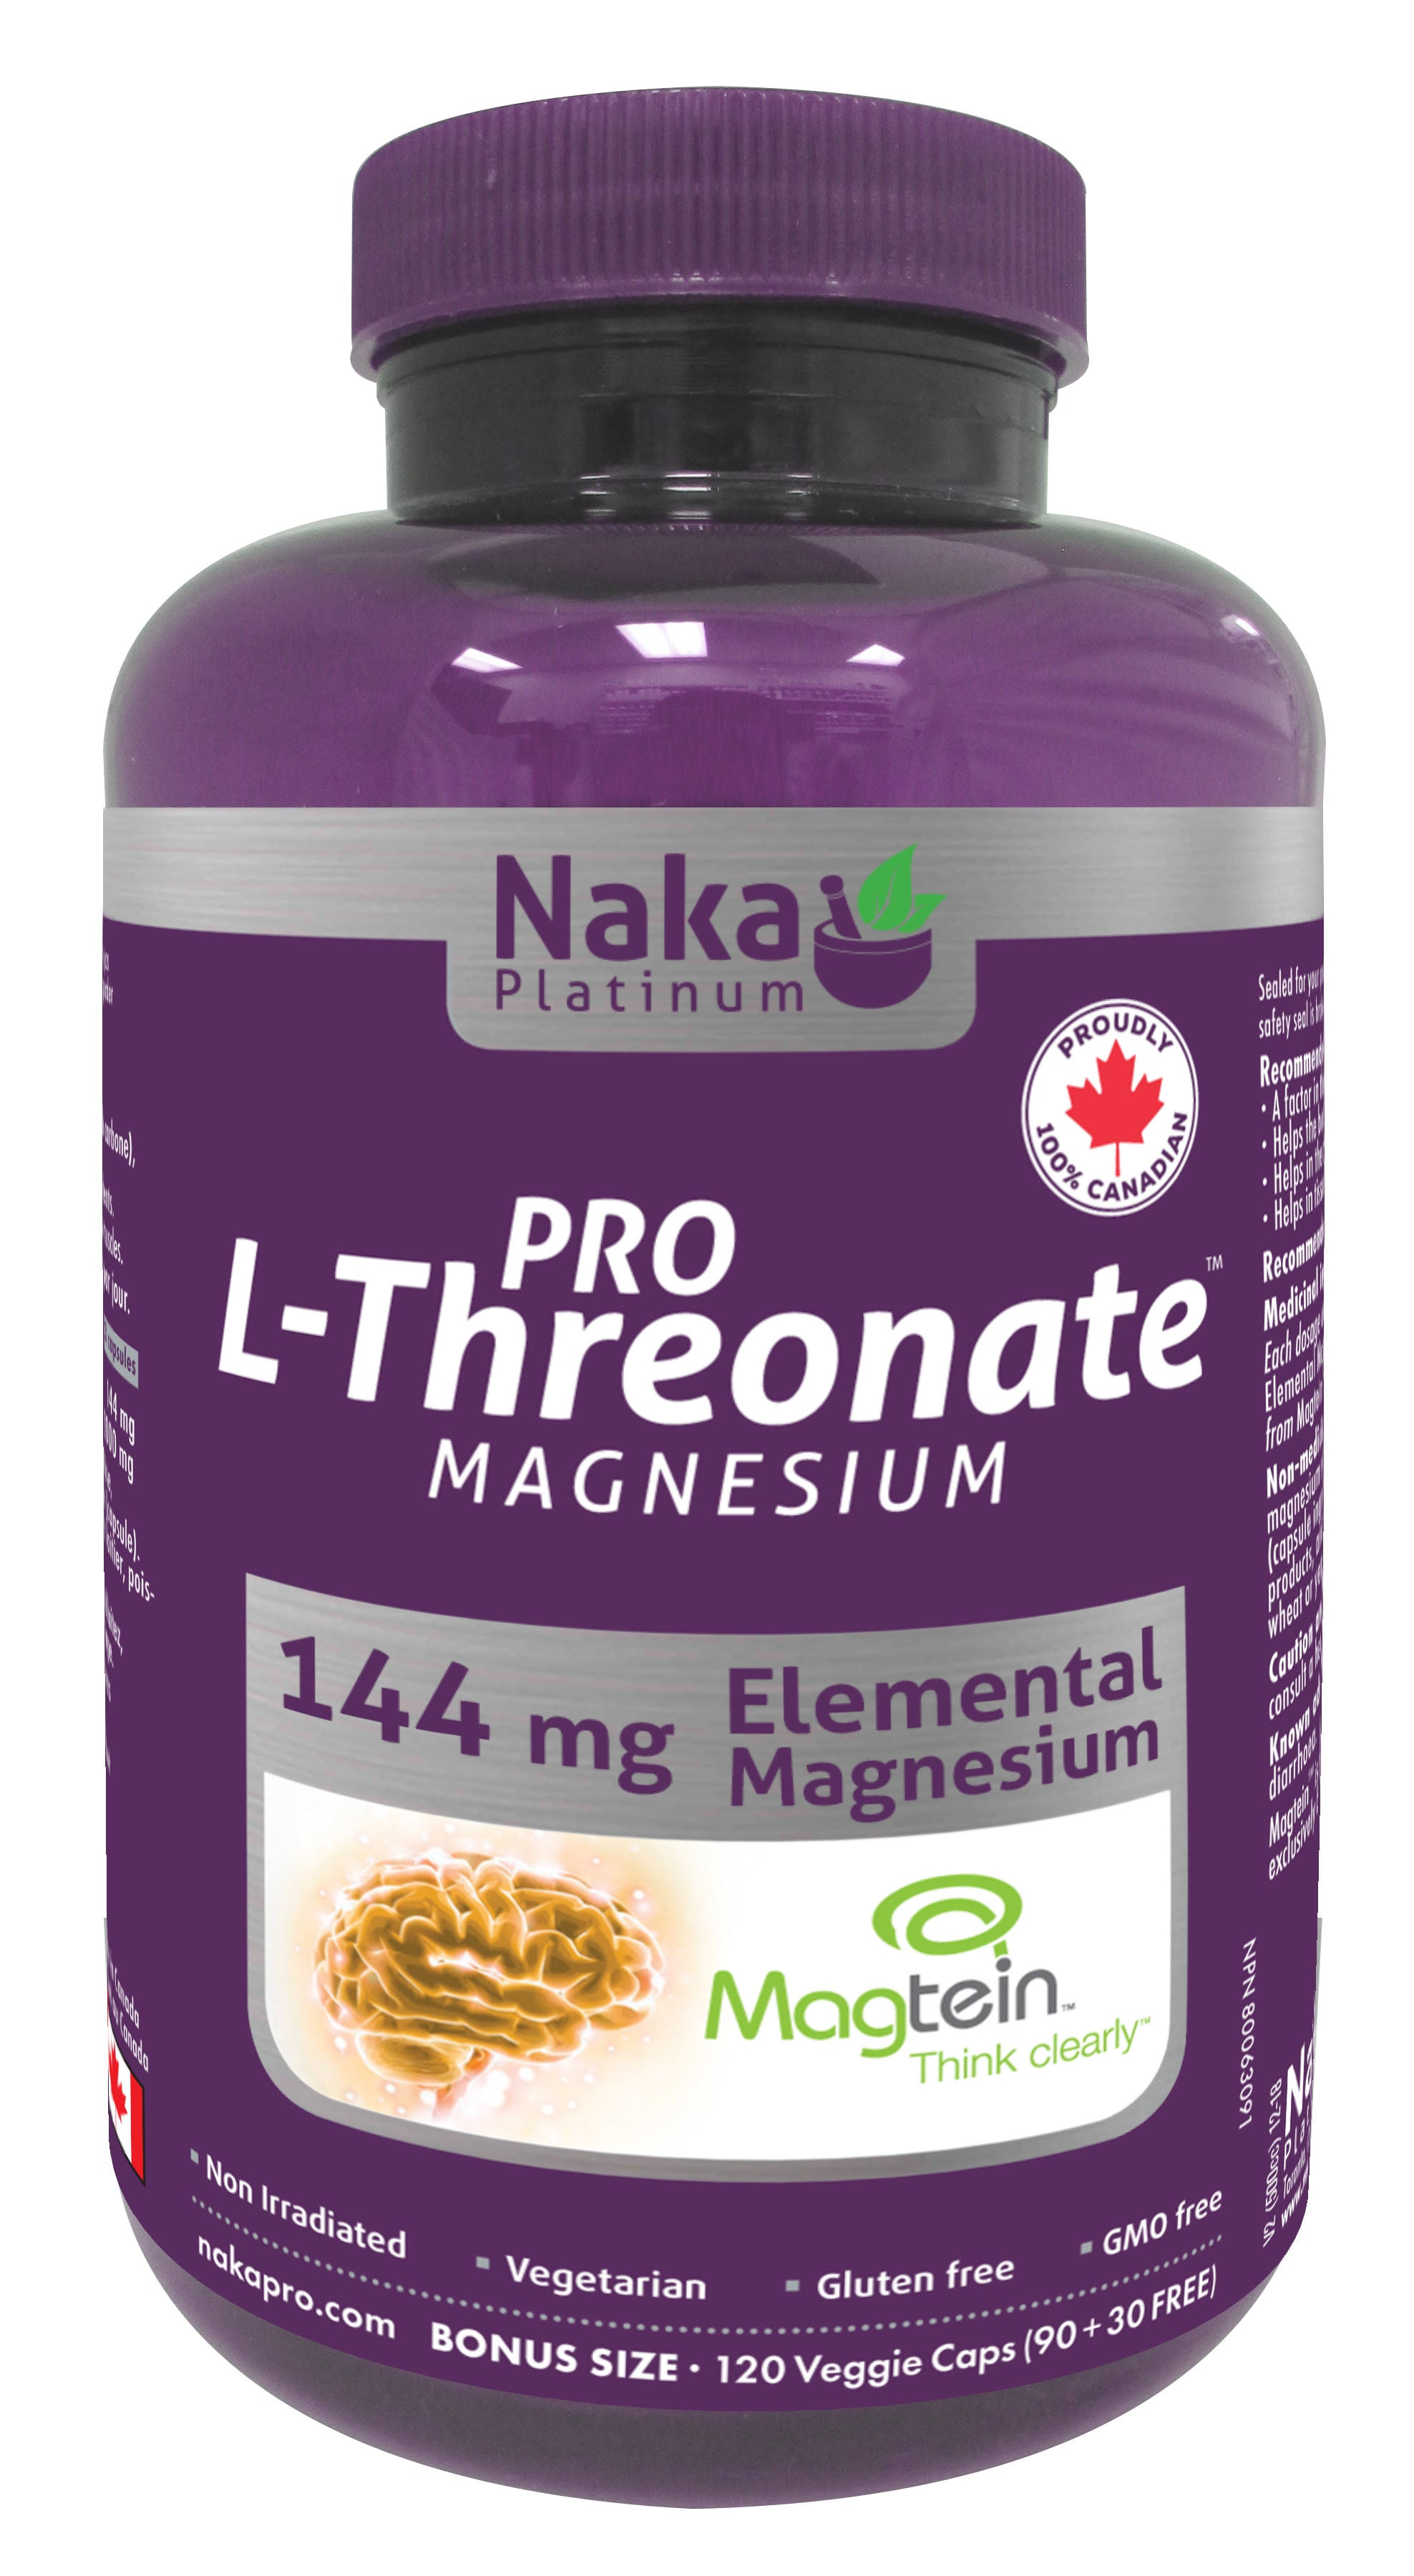 Naka Platinum PRO Magnesium L-Threonate Magtein 2,000 mg per Serving (3capsules) 144 Elemental Magnesium - Bonus Size 120 Veggie Caps (90+30 Free)